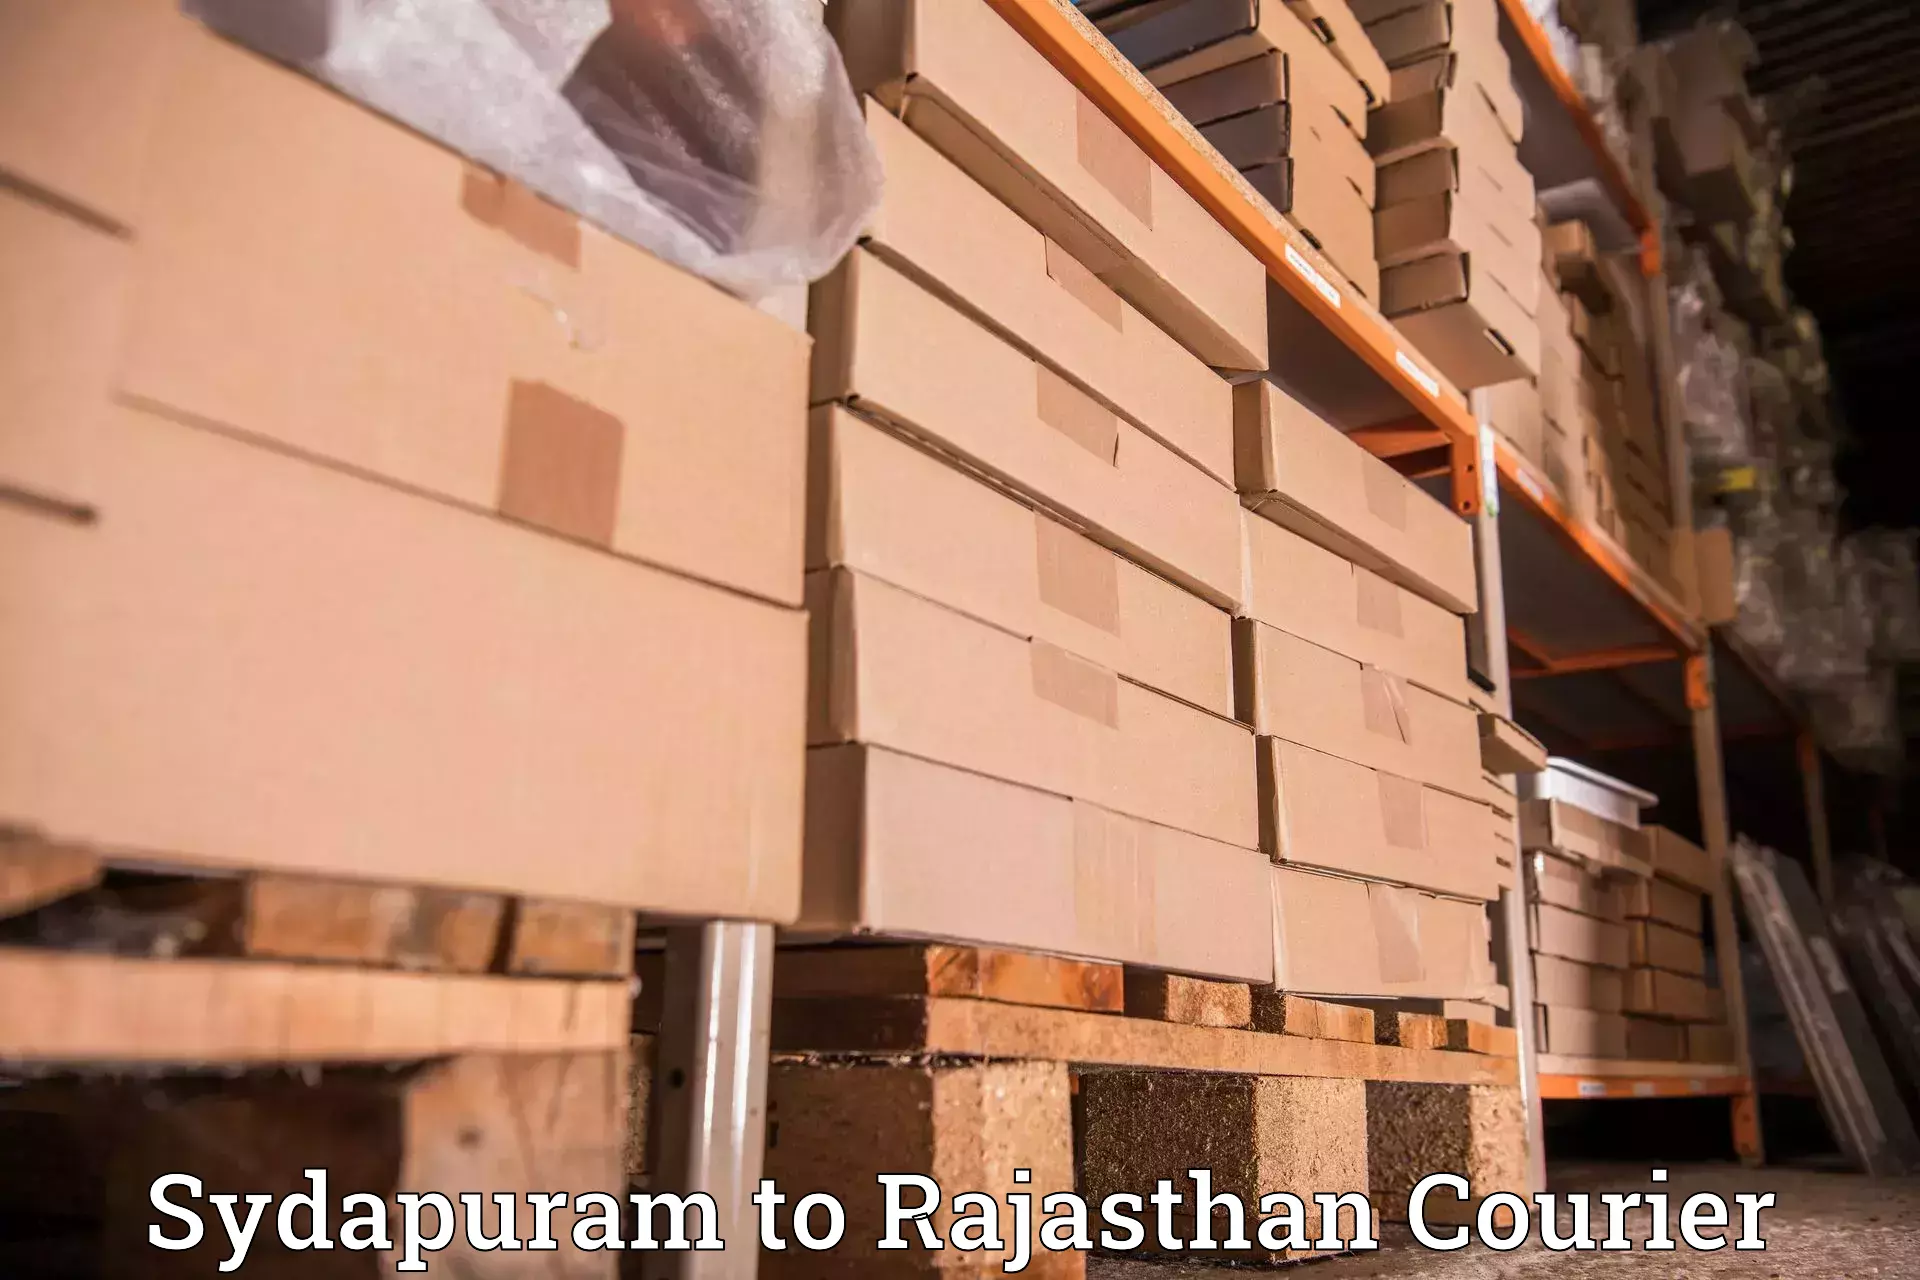 Courier app Sydapuram to Paota